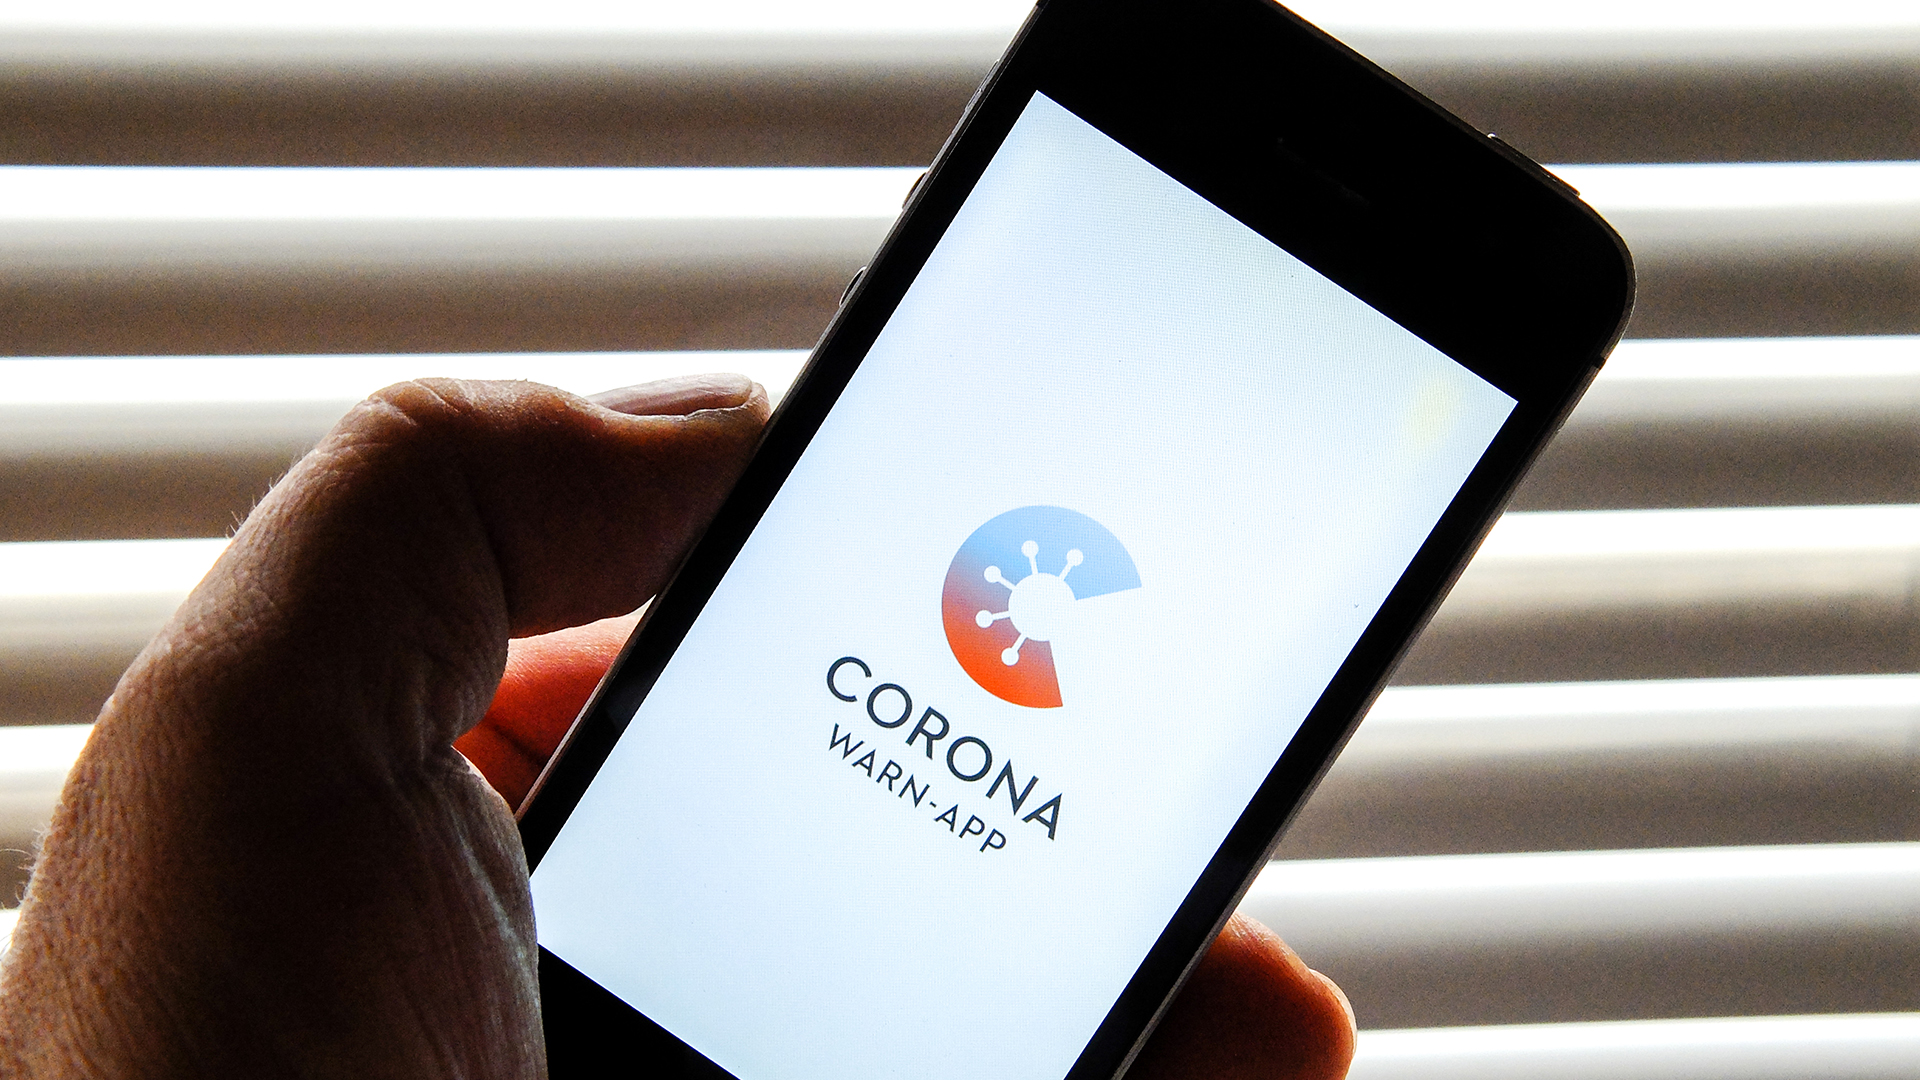 Auf dem Bildschirm eines Smartphones ist der Startschirm der Corona-Warn-App abgebildet.